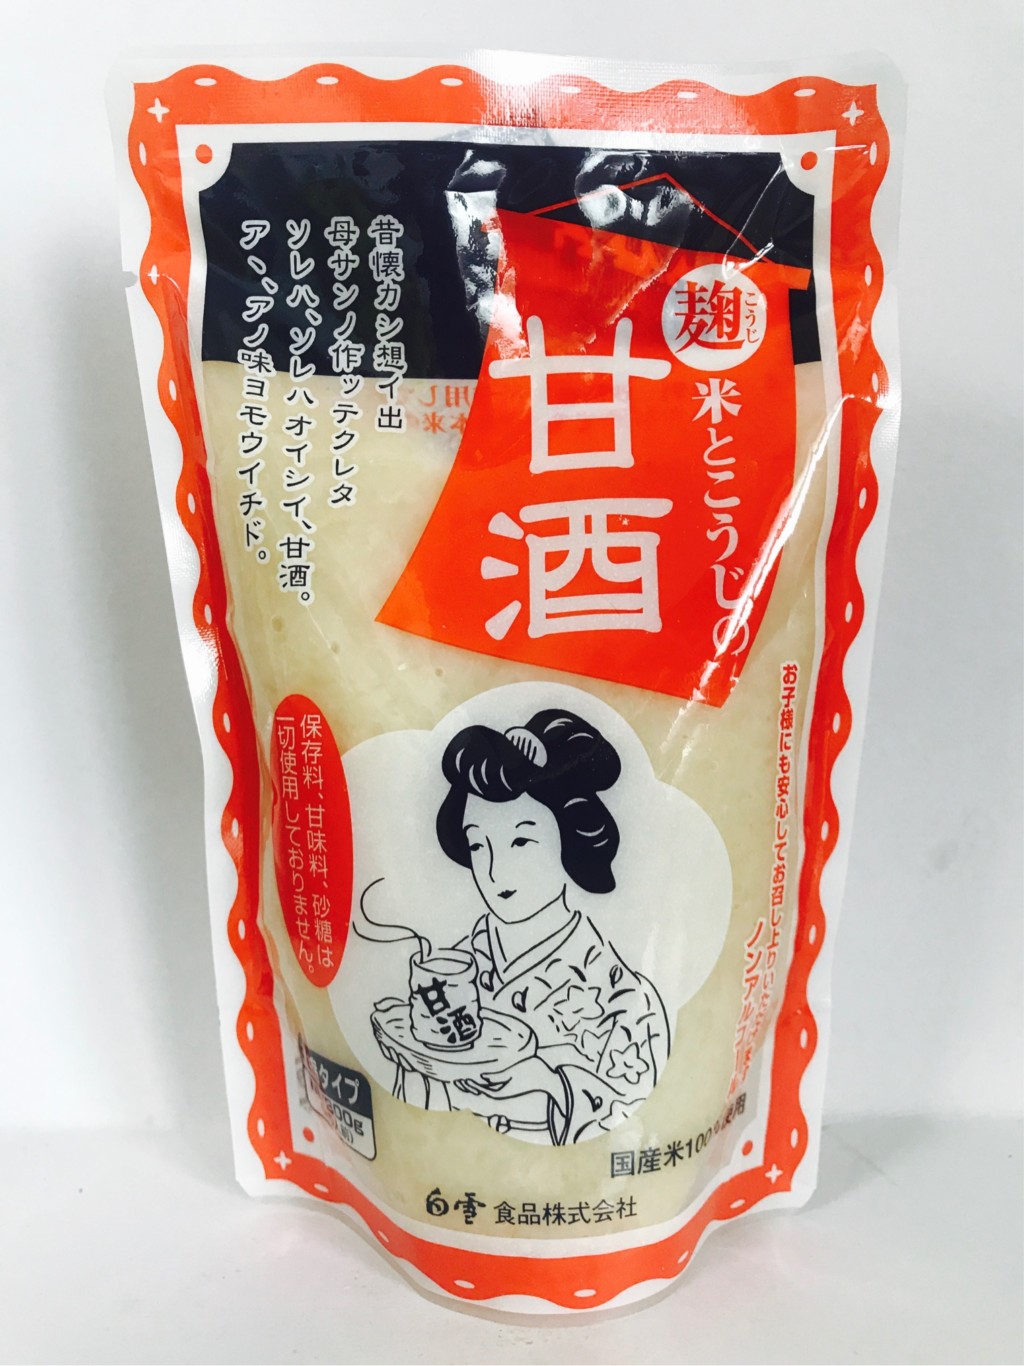 白雪食品の濃縮タイプの米麹甘酒『米とこうじのあまざけ』